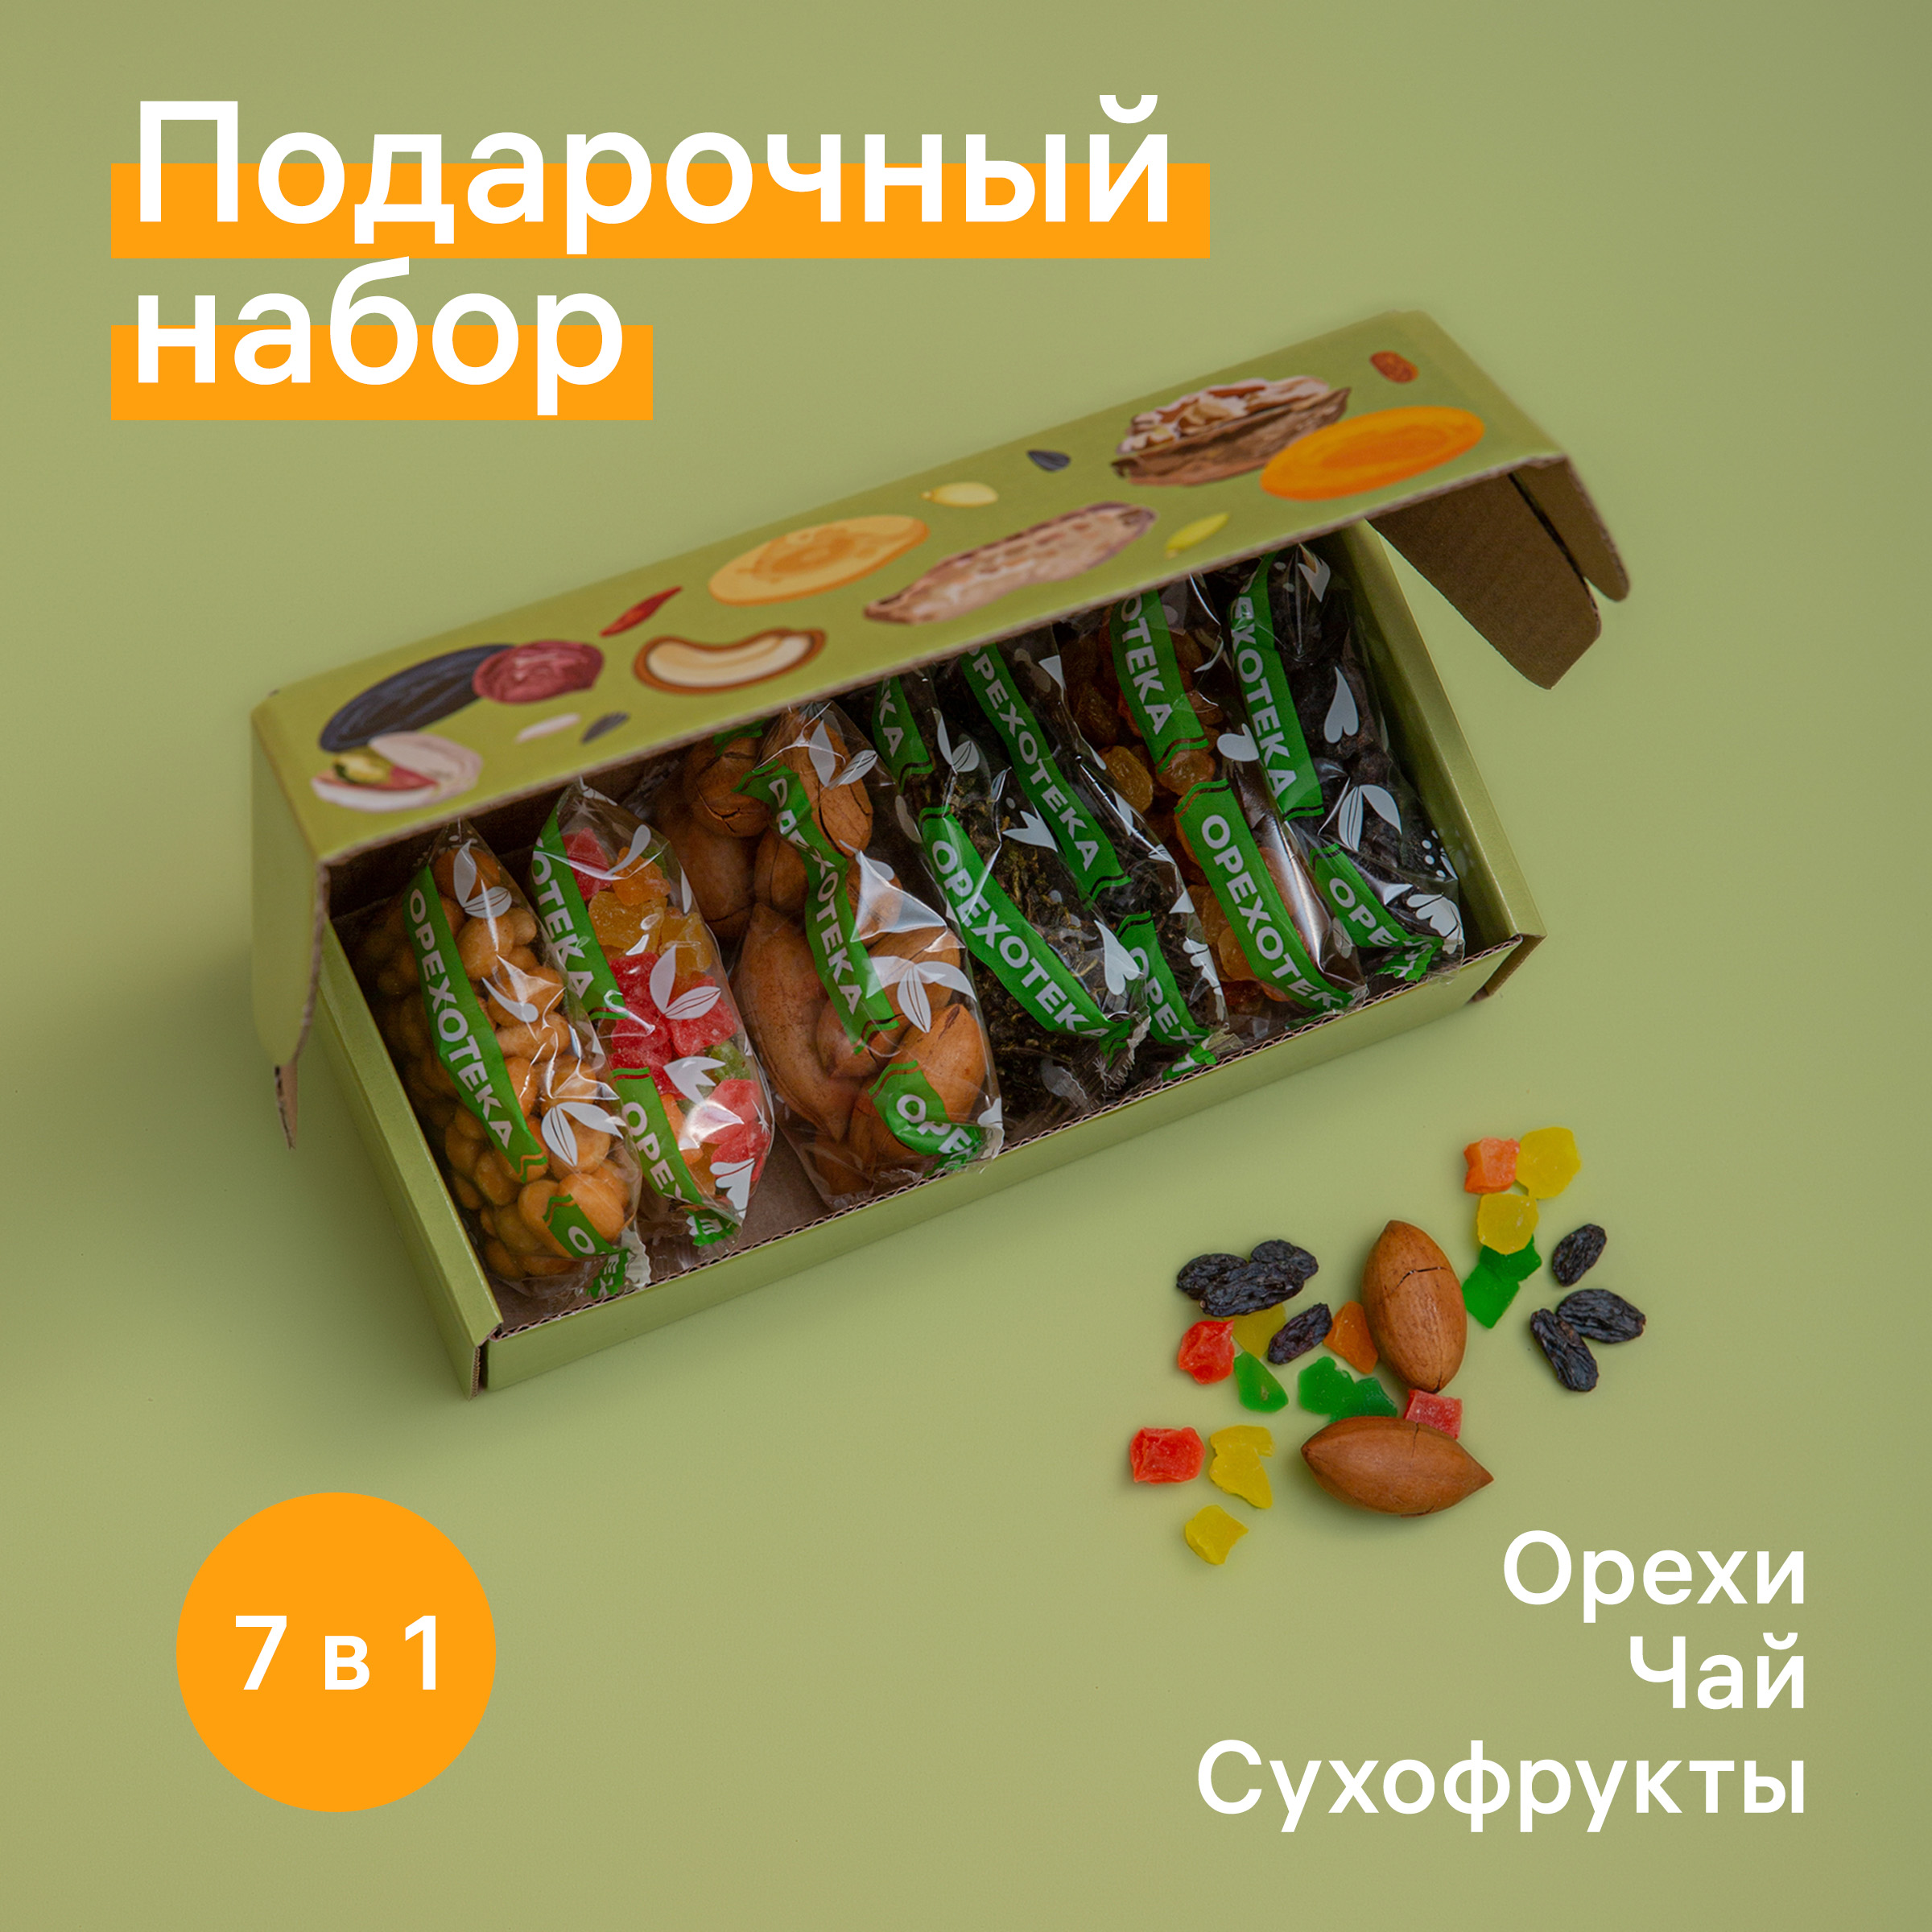 Подарочный набор ОРЕХОТЕКА из орехов, сухофруктов, цукатов и чая 7 в 1, 290 г